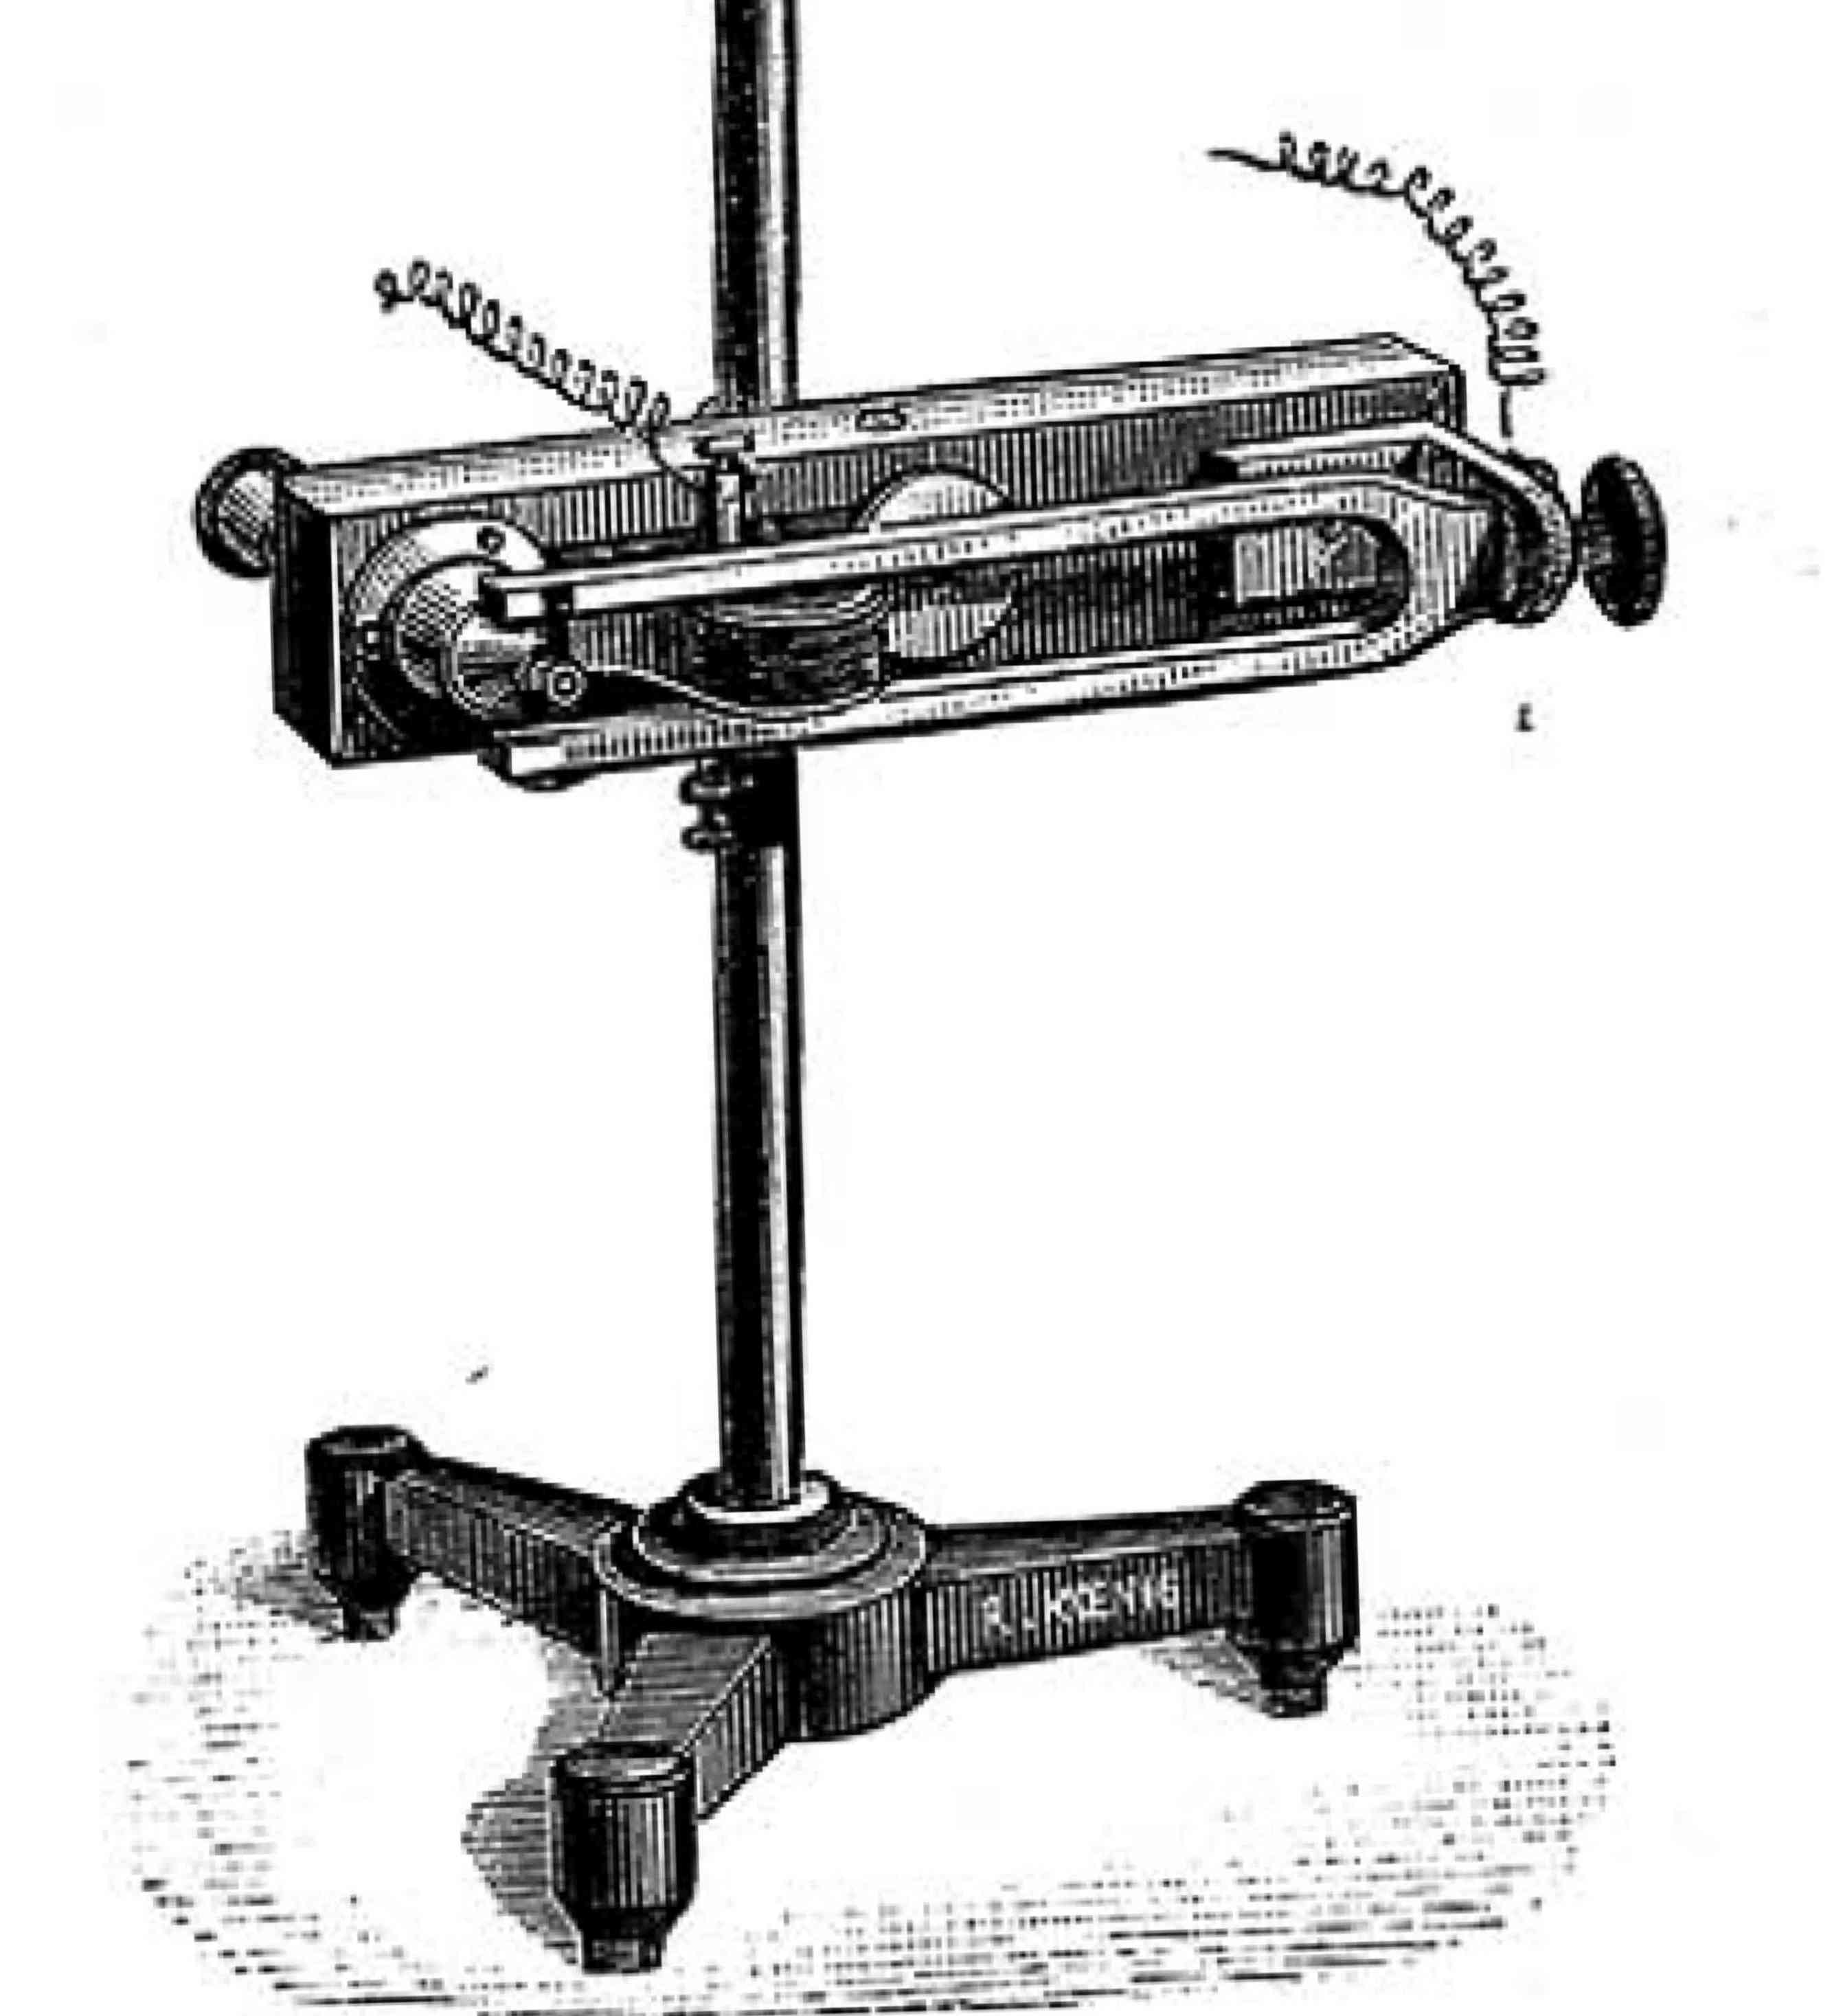 Comparateur optique de Helmholtz
(microscope à vibrations)